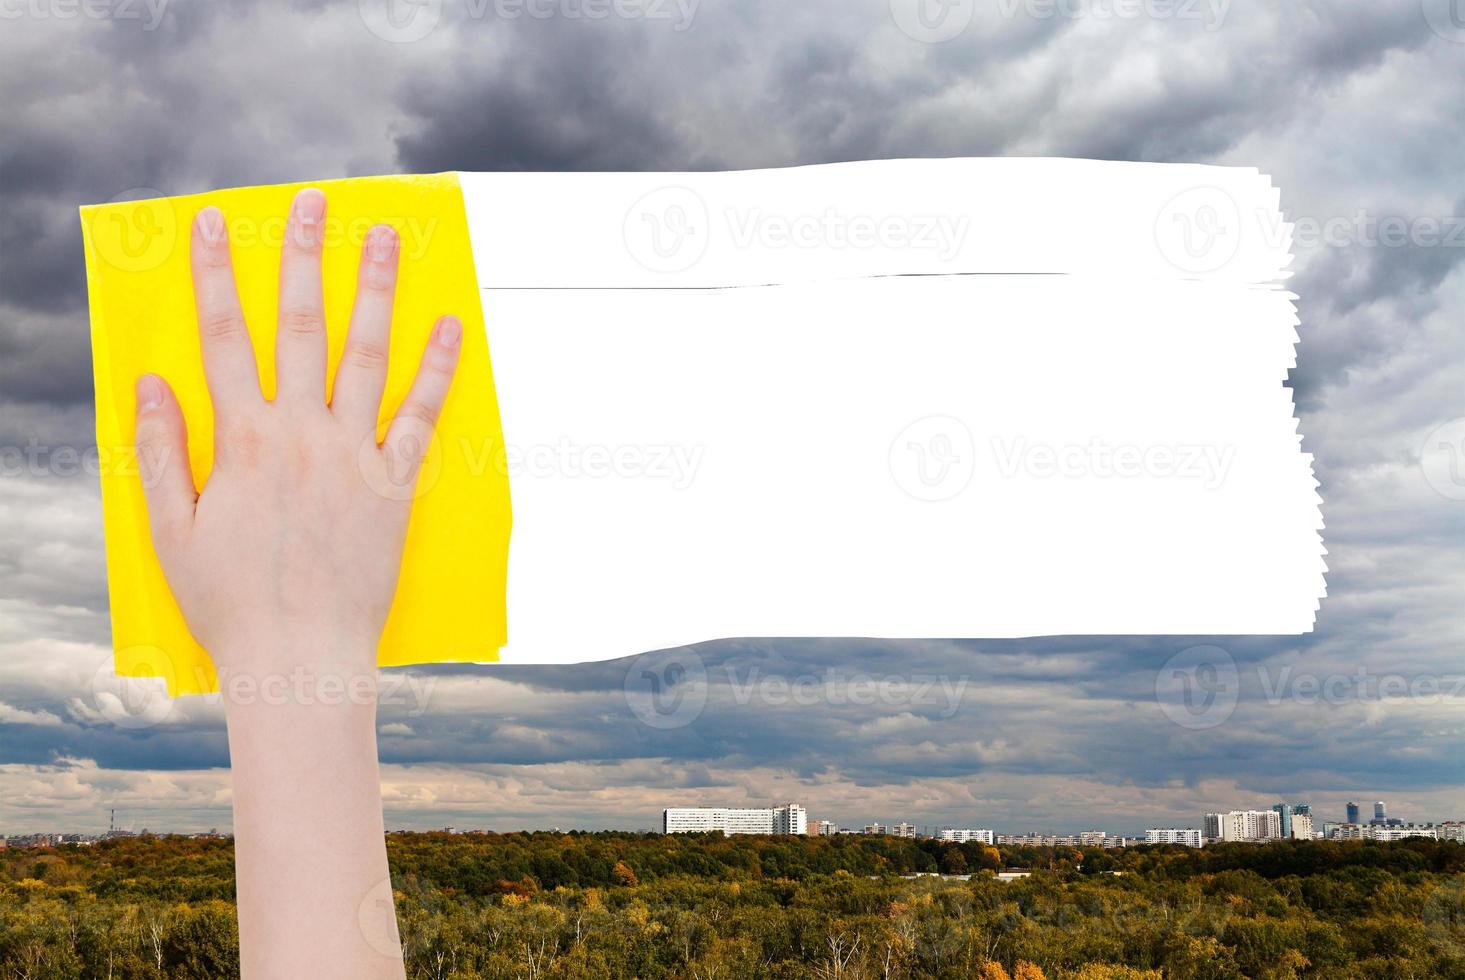 la mano elimina las nubes lluviosas sobre la ciudad con un trapo amarillo foto